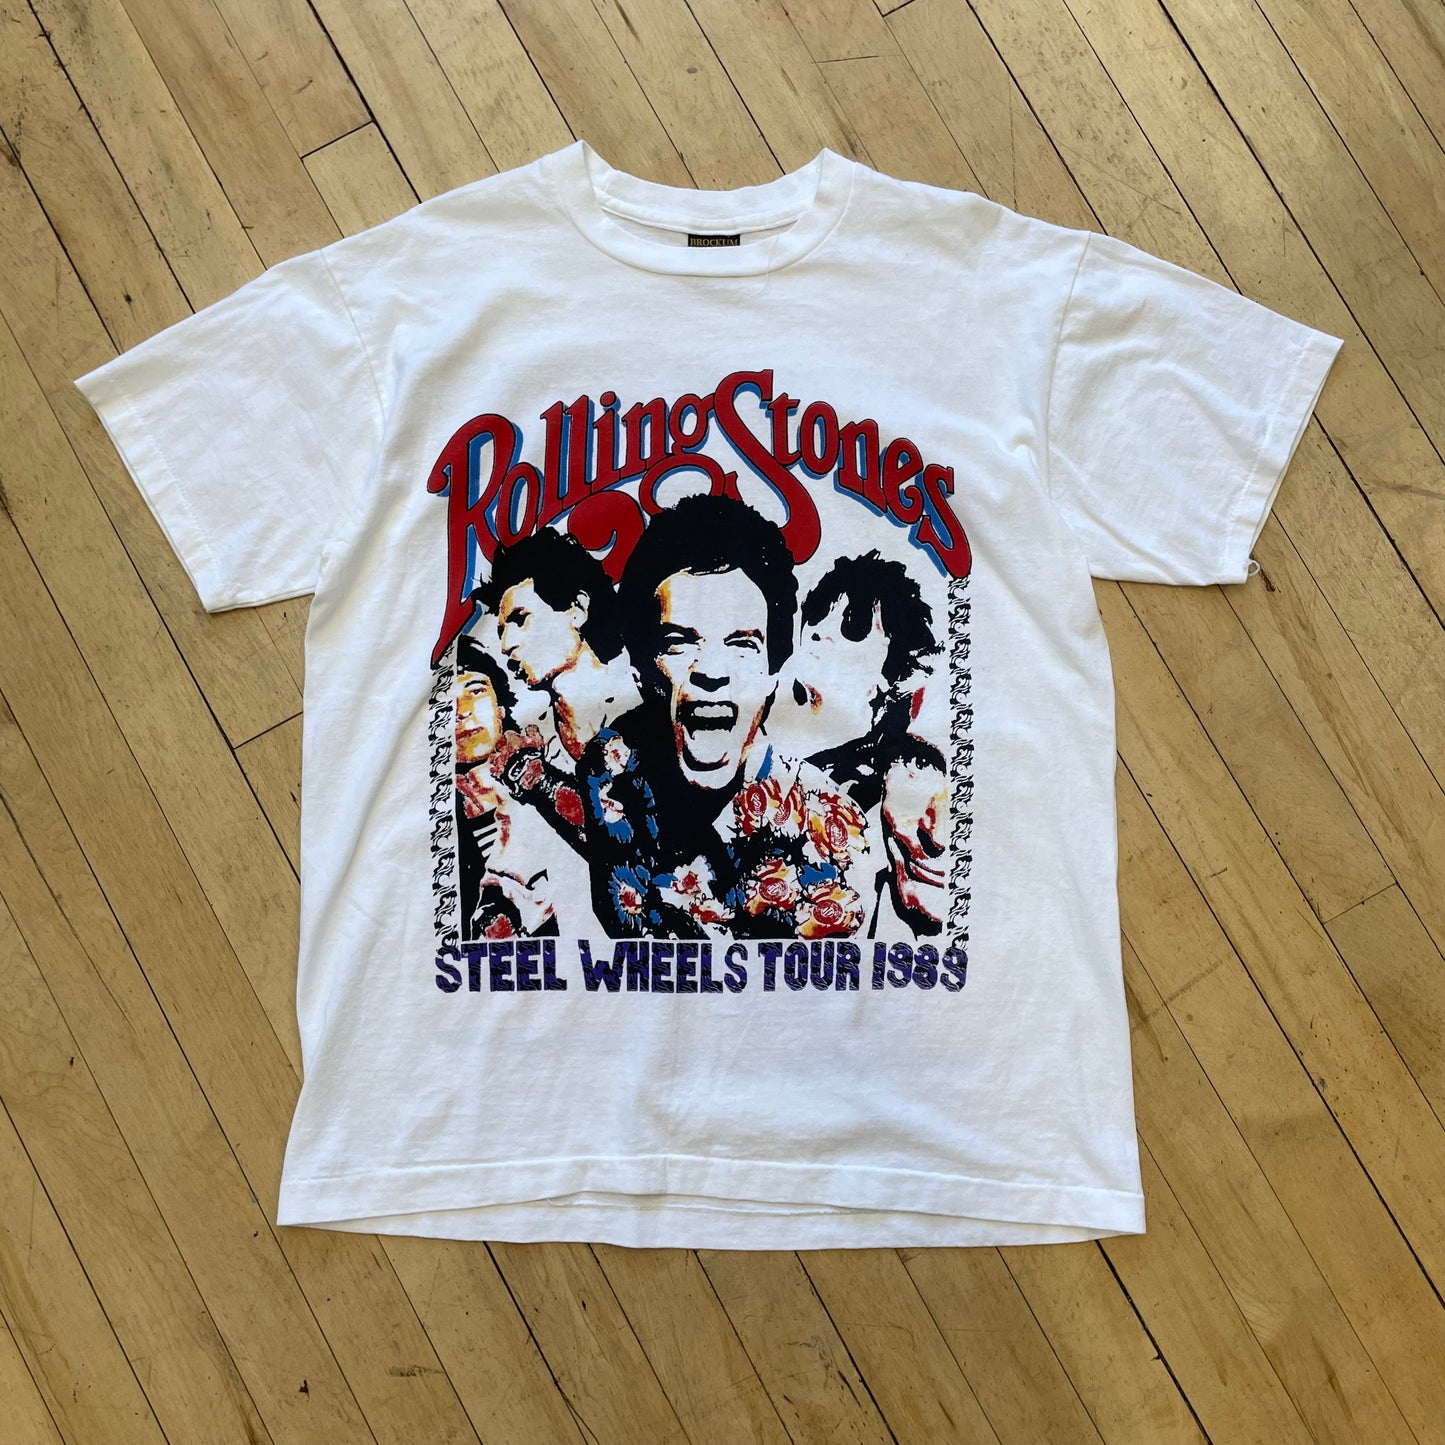 Vintage Rolling Stones North American Tour T-shirt Sz L